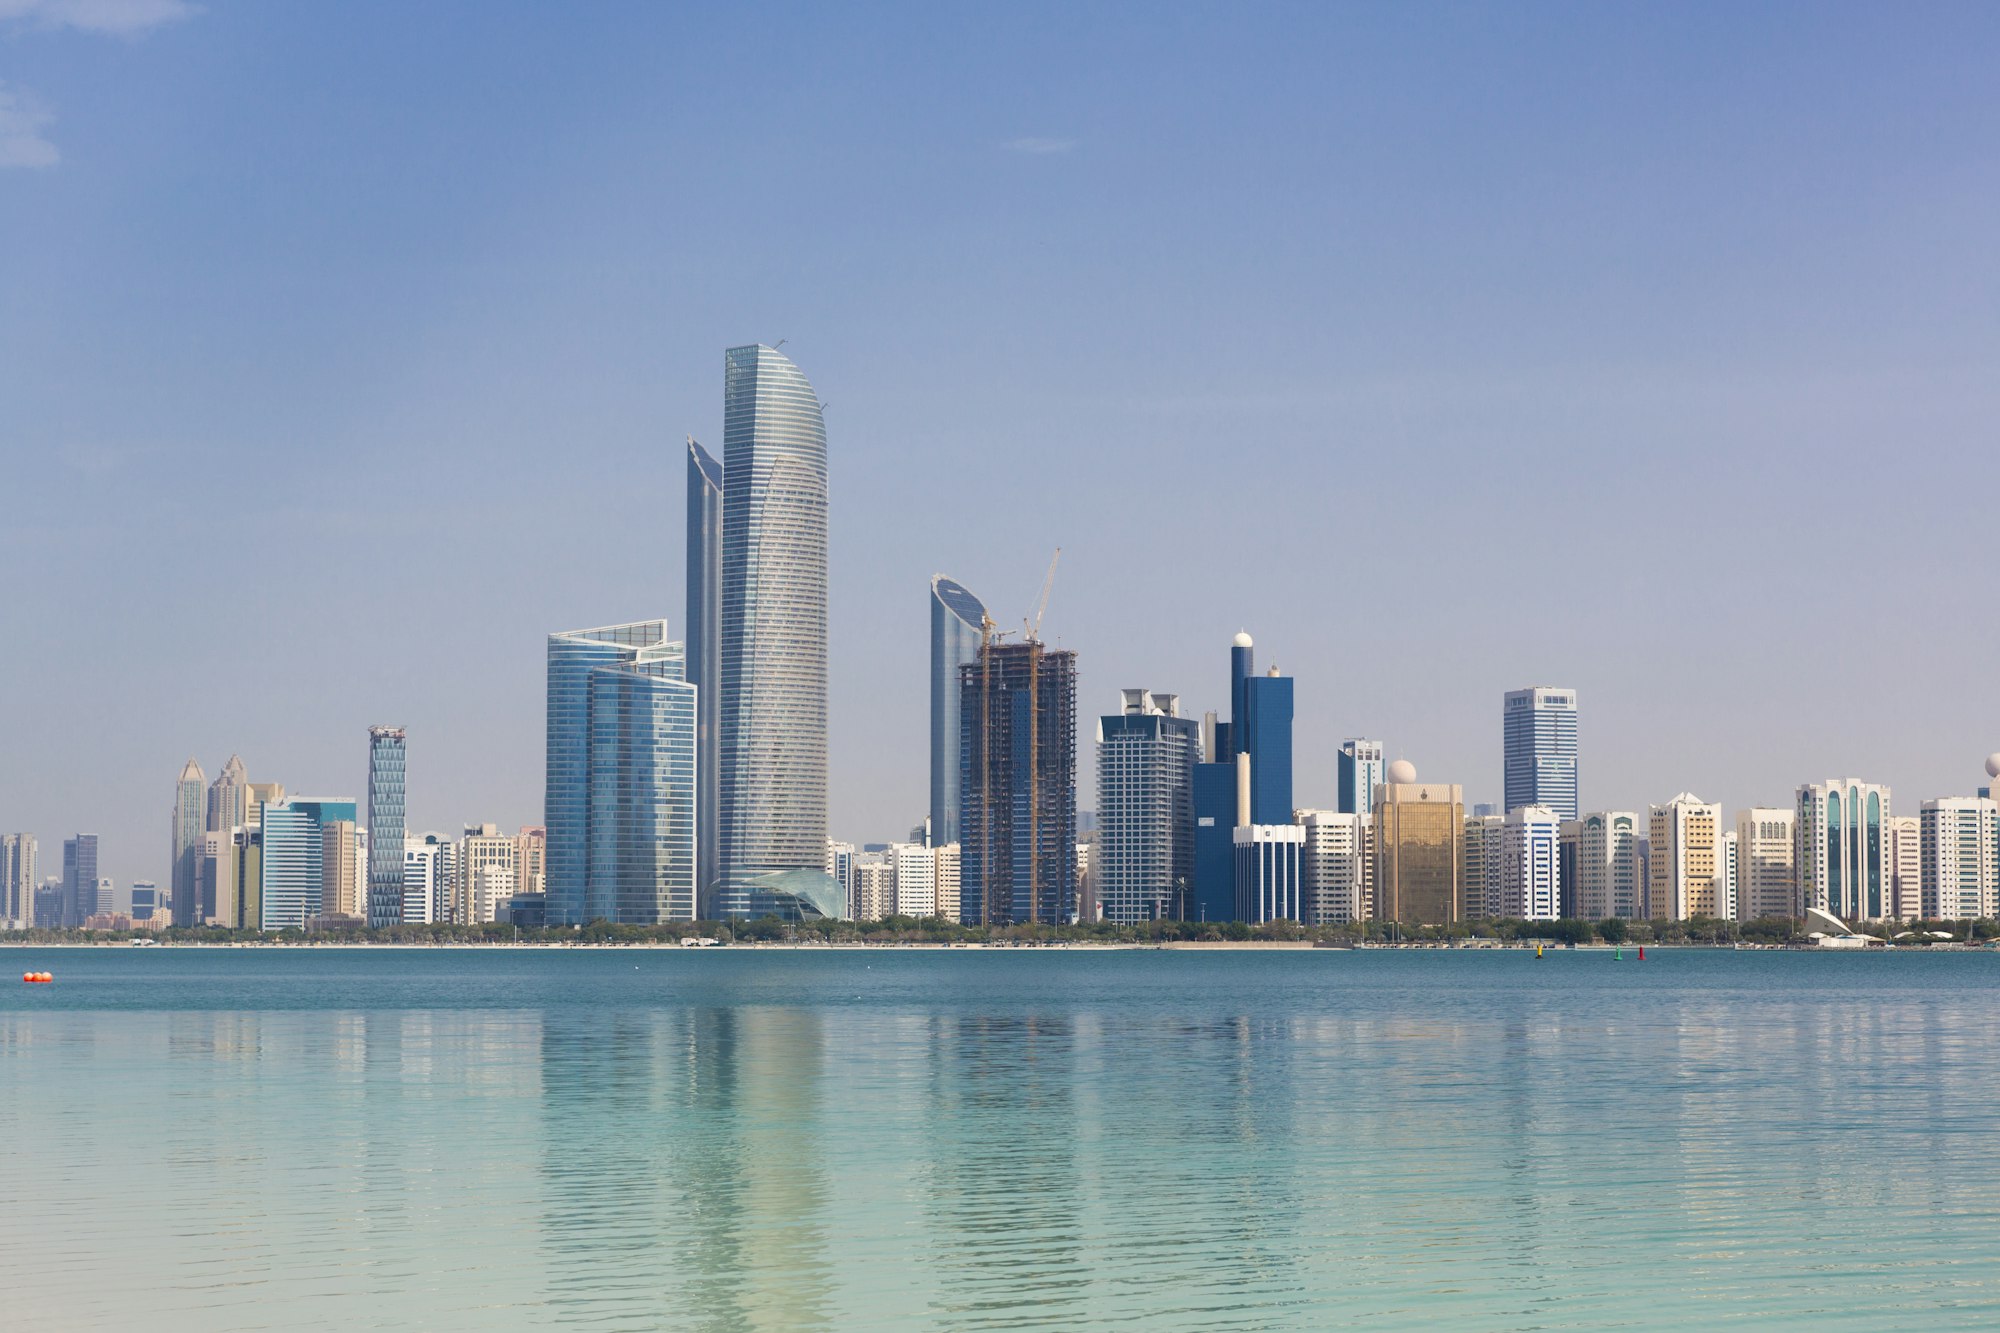 Daylight Abu Dhabi Skyline with skyscrapers